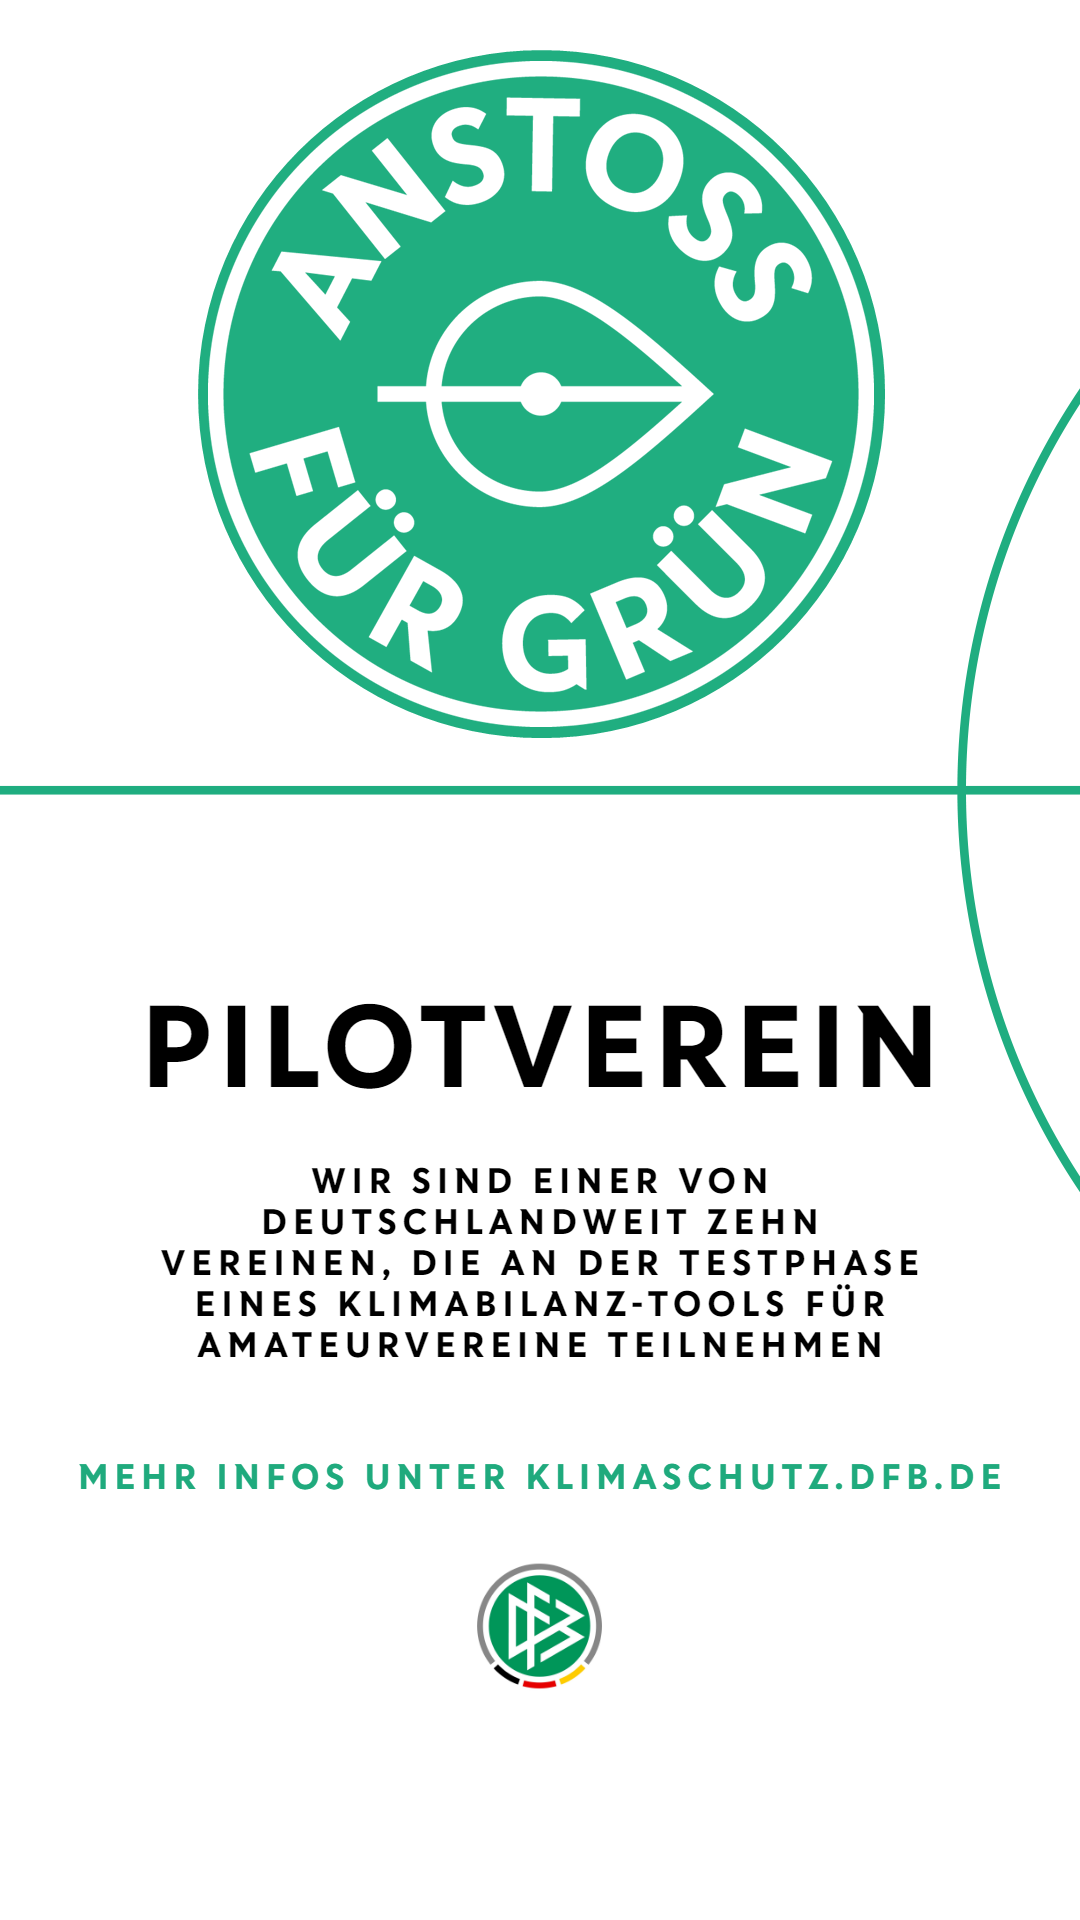 Pilotverein_Auszeichnung